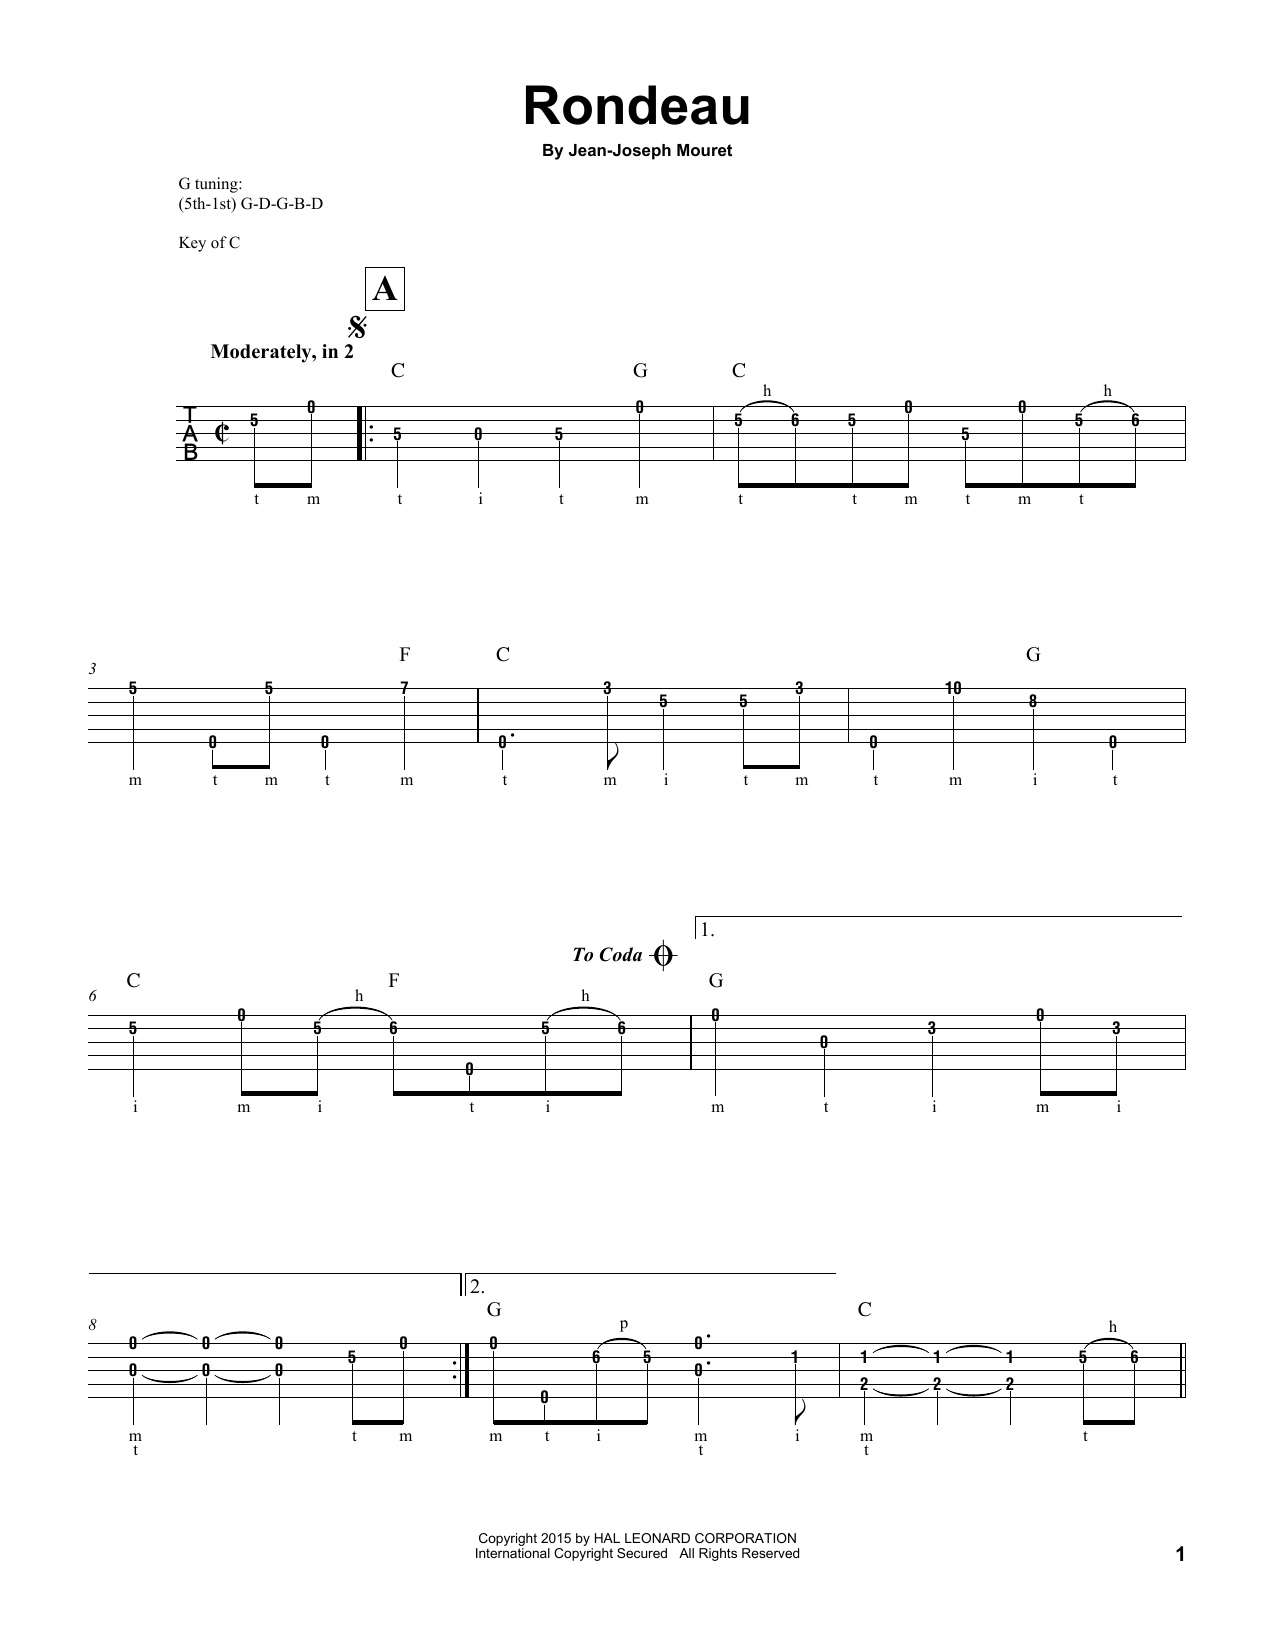 Jean-Joseph Mouret Fanfare Rondeau Sheet Music Notes & Chords for Alto Saxophone Duet - Download or Print PDF